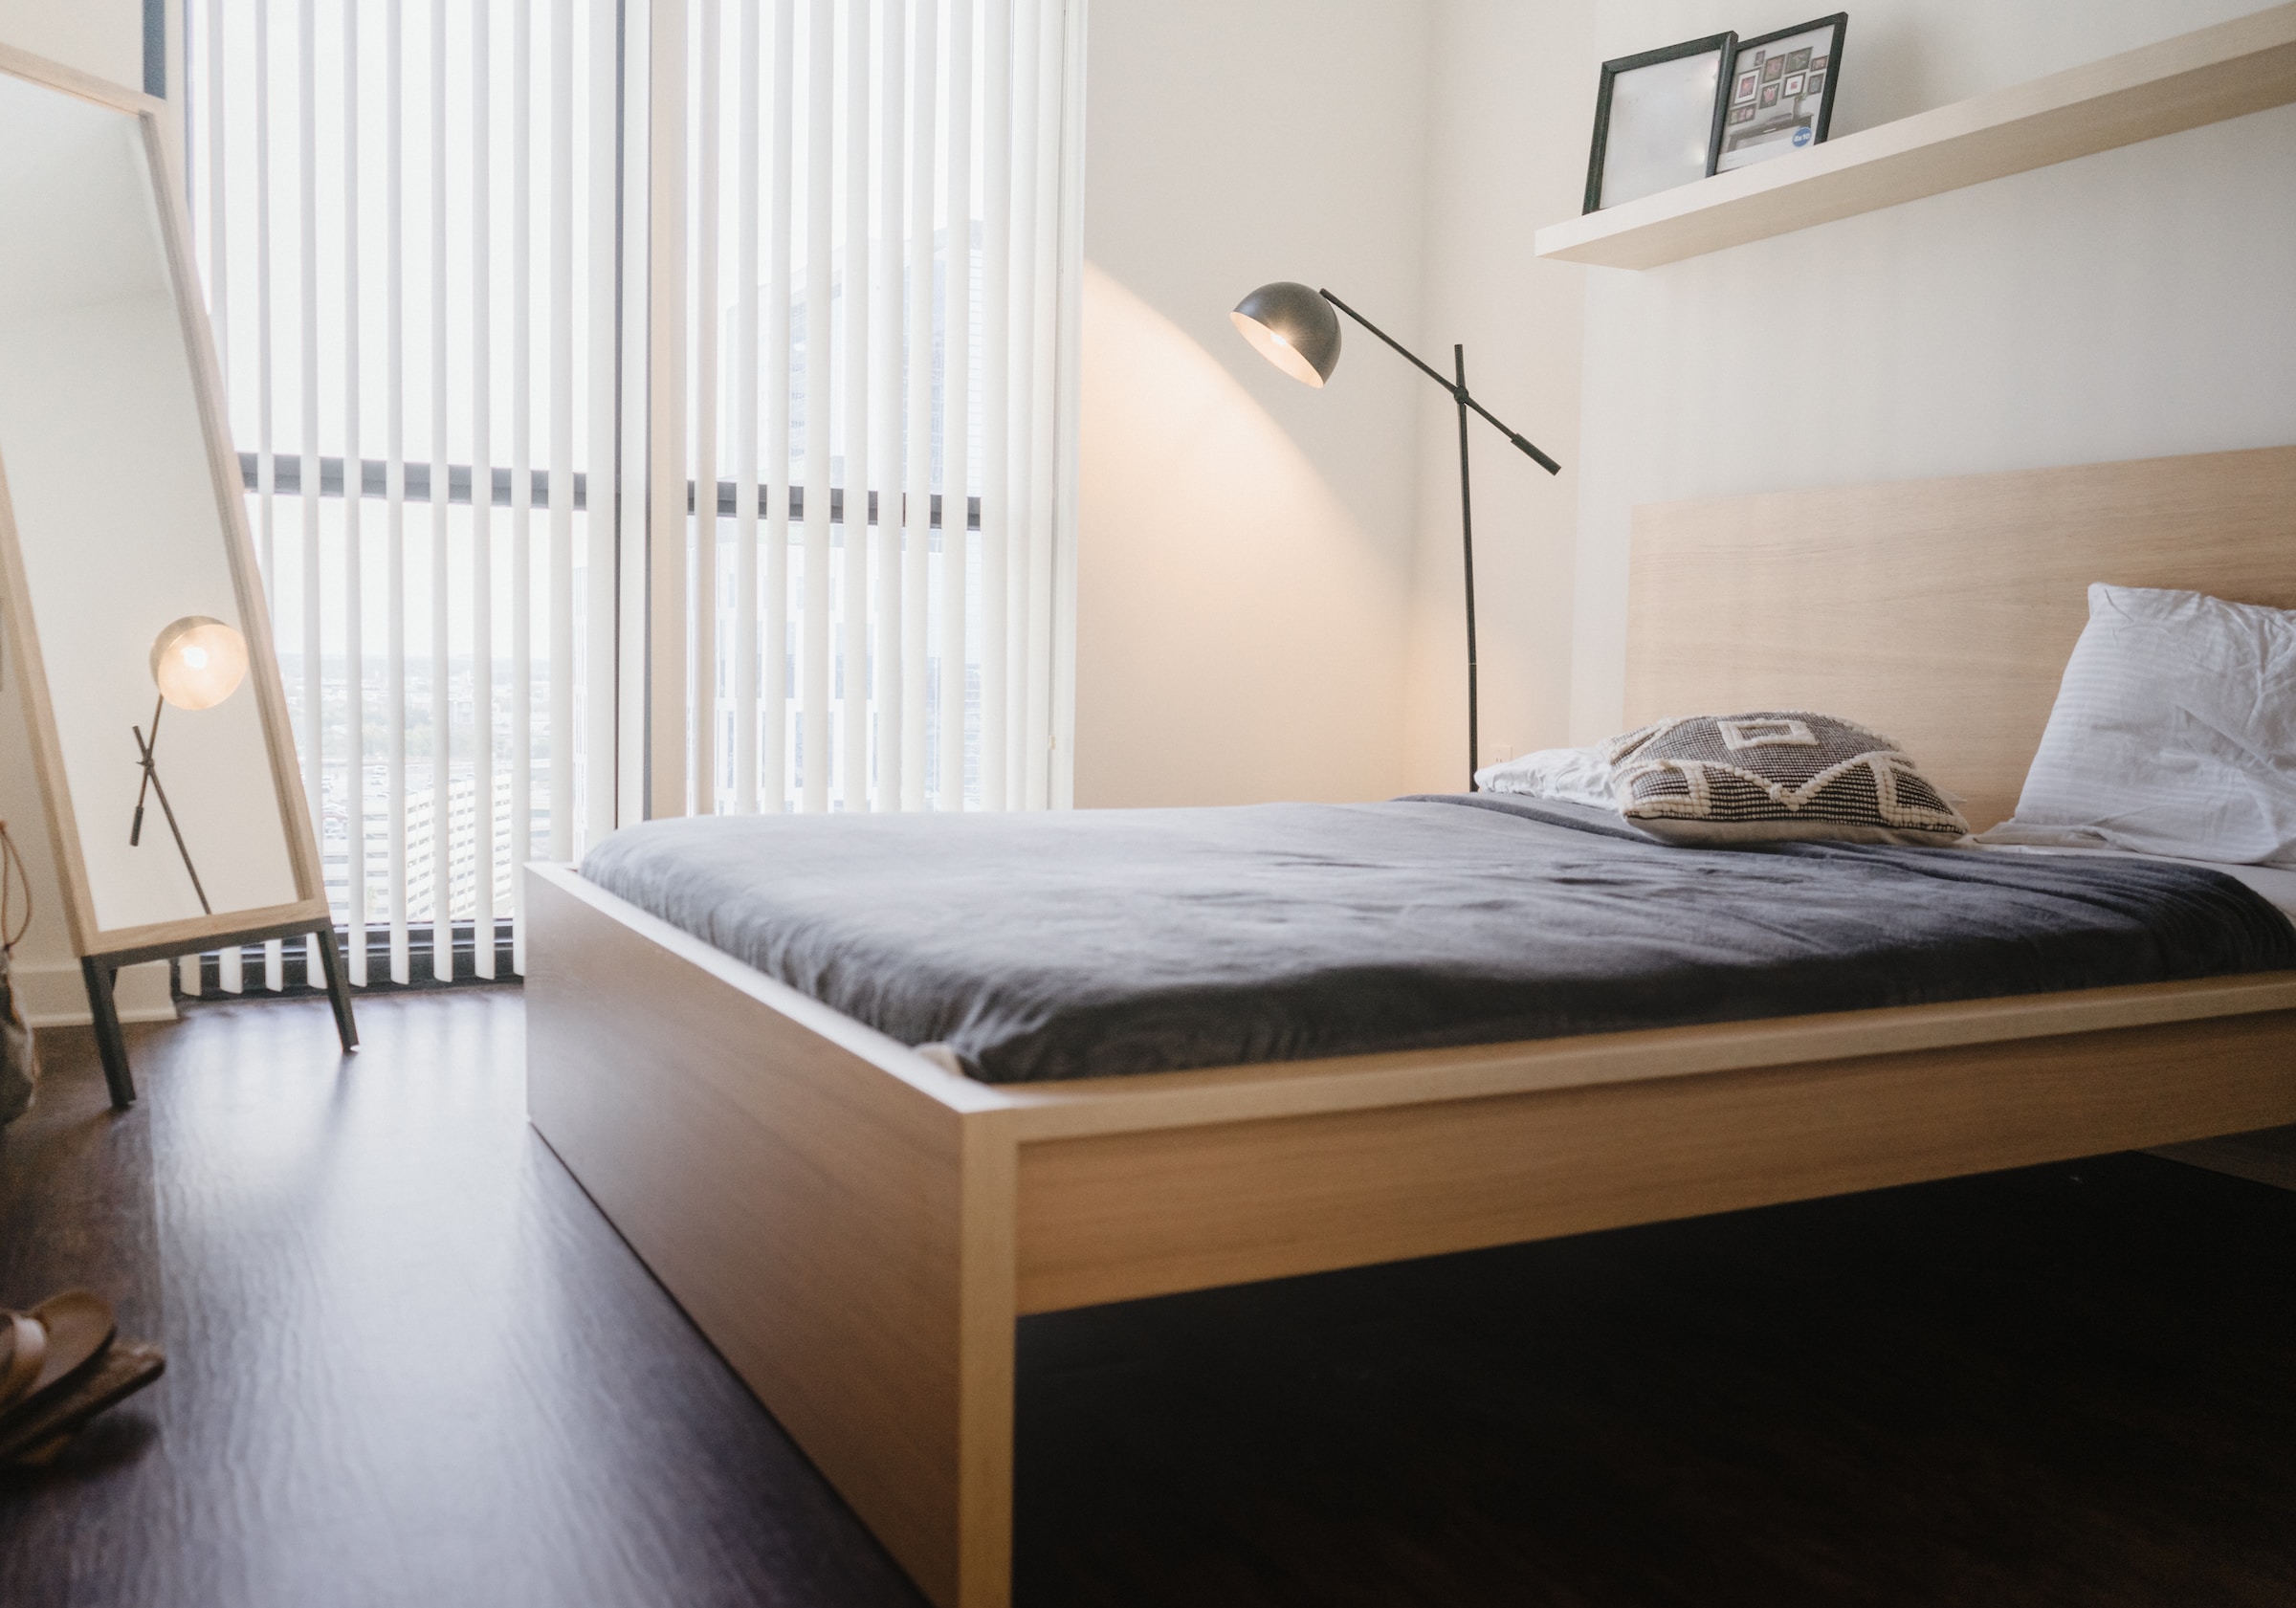 Væghængt natbord – praktisk og pladsbesparende